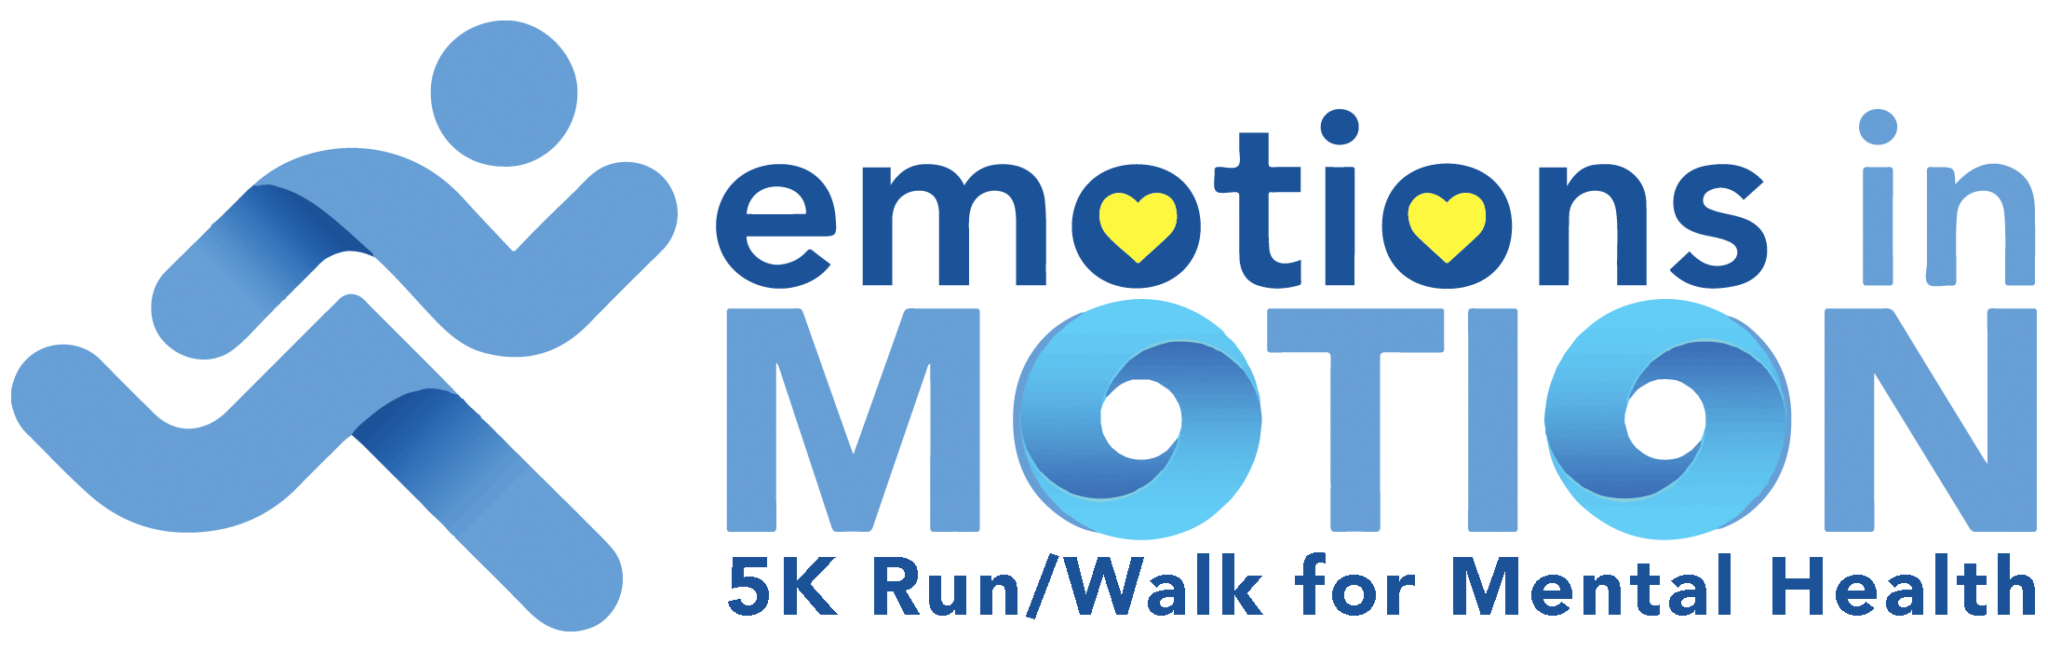 Emotions In Motion: 5K & 10K for Mental Health MPLS logo on RaceRaves